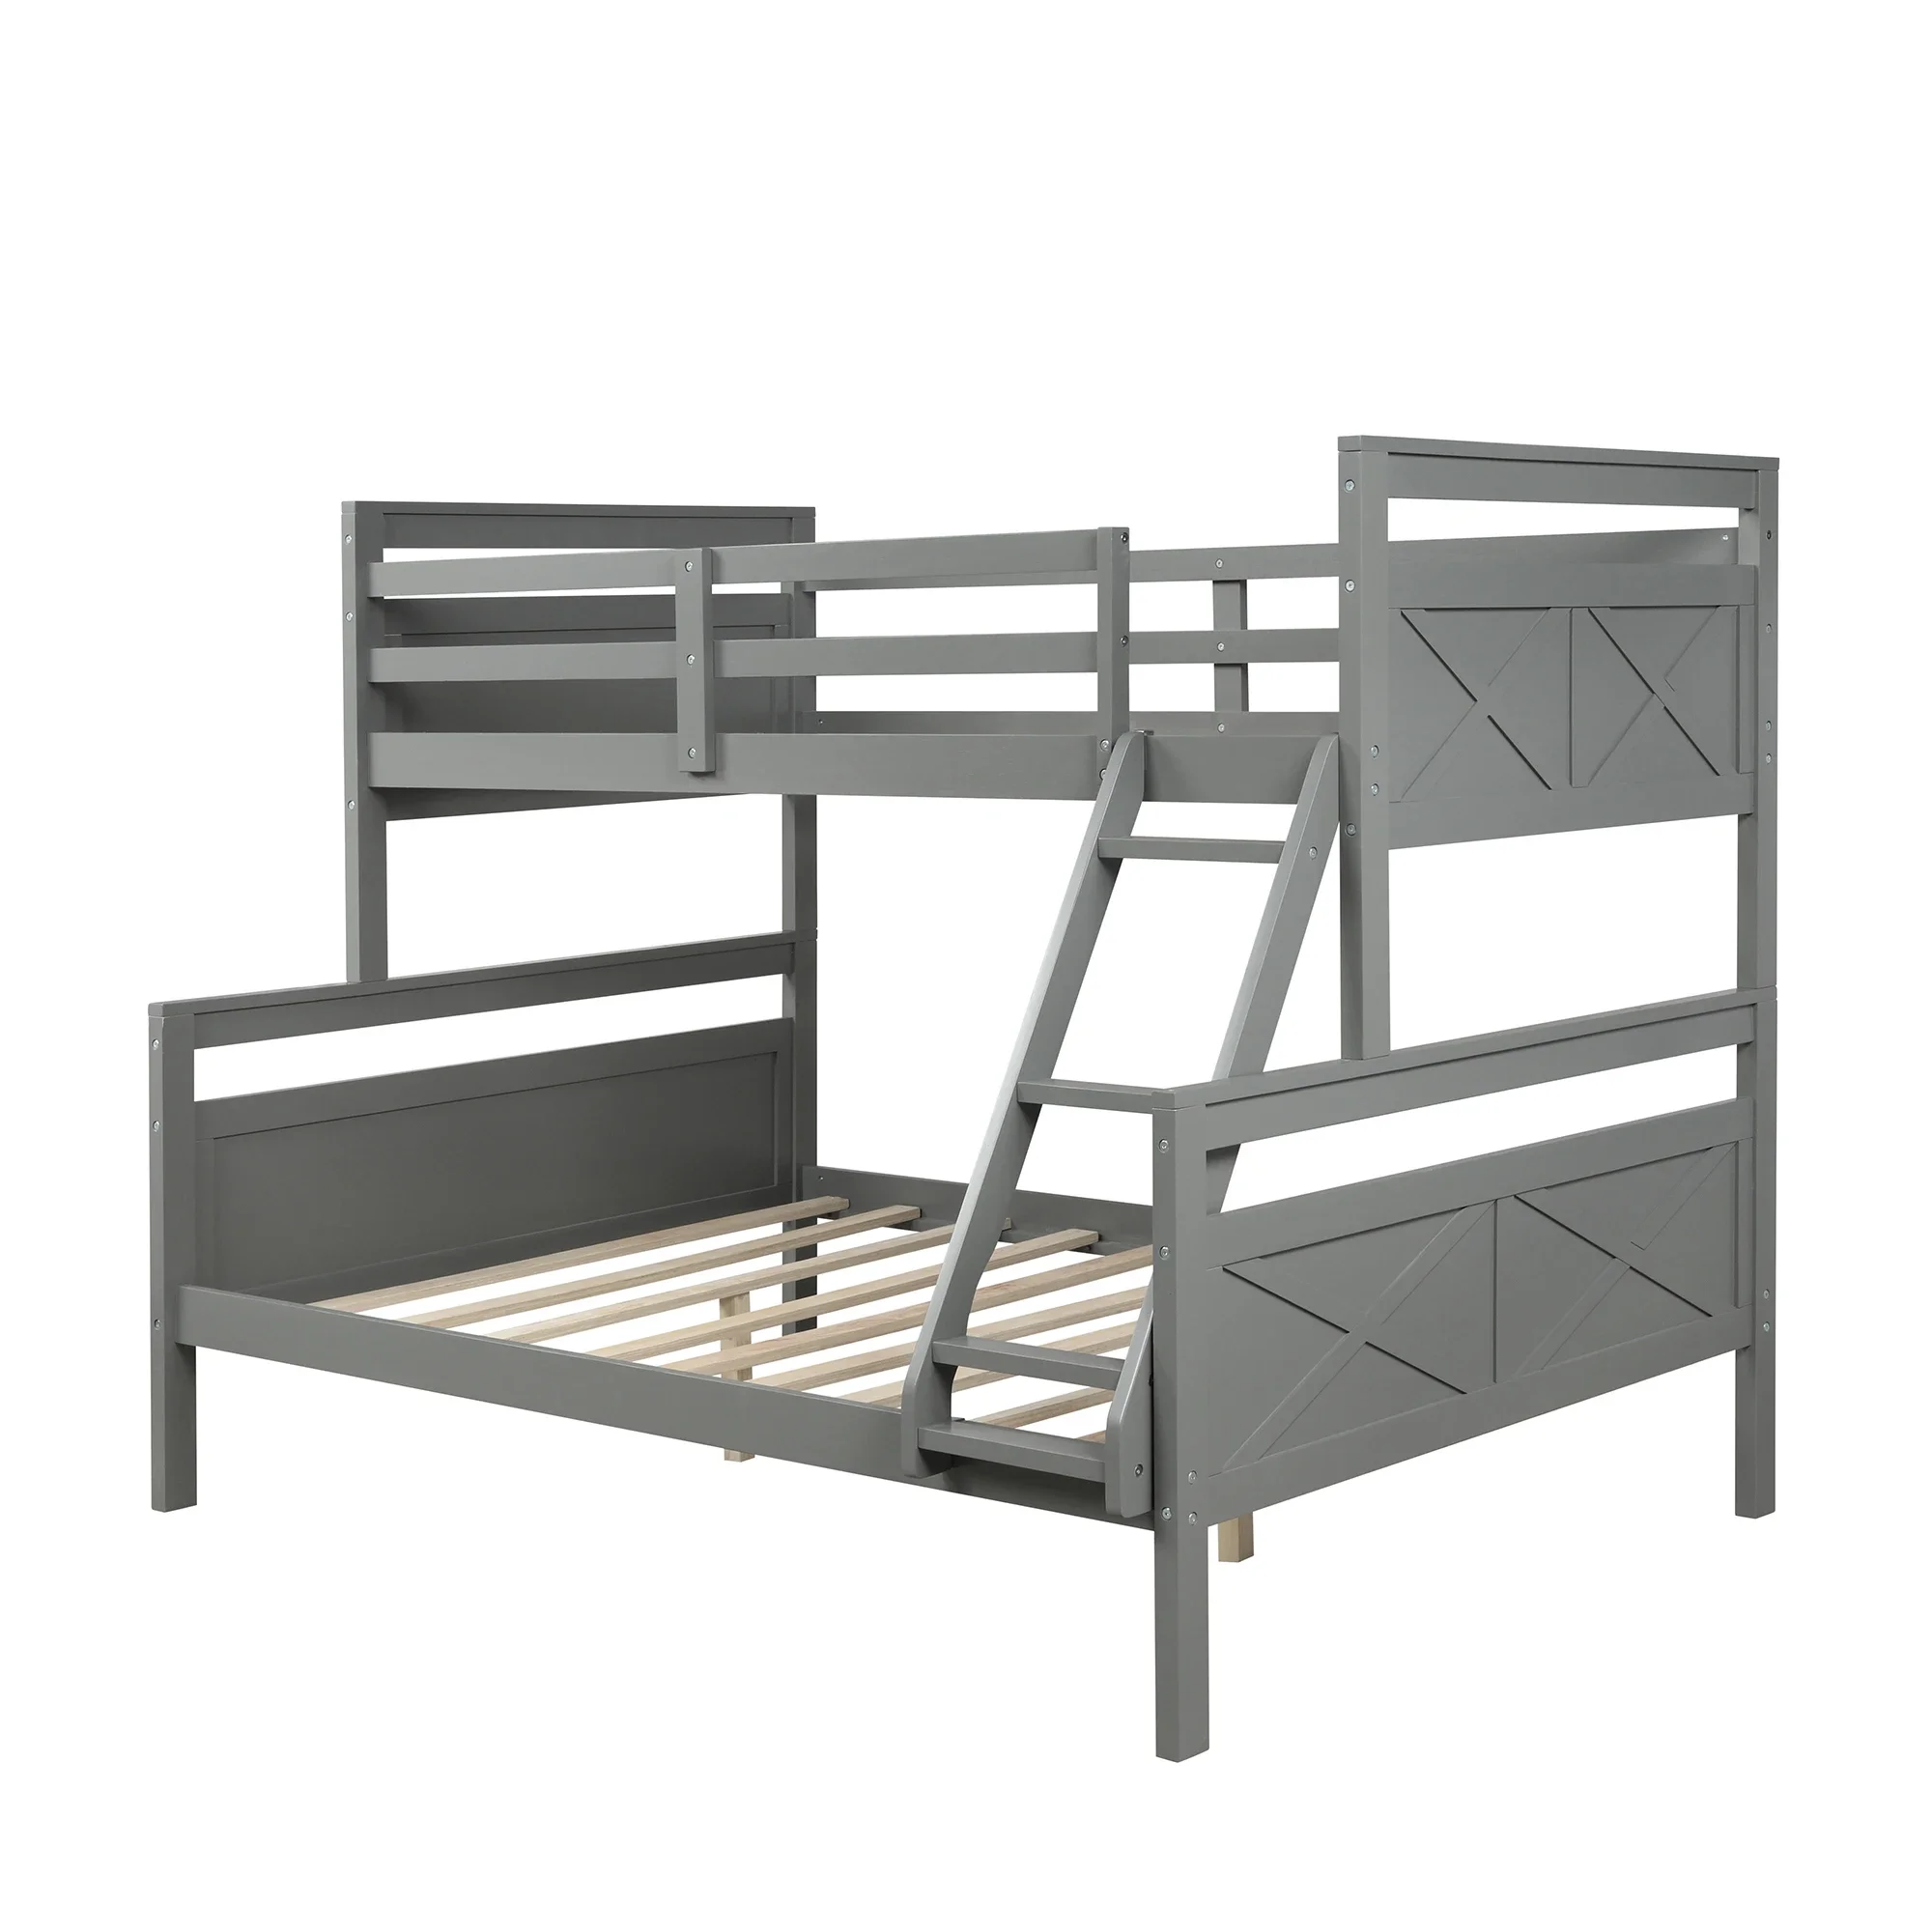 Двойная двухъярусная кровать с лестницей, безопасное ограждение, идеально подходит для спальни, серого цвета